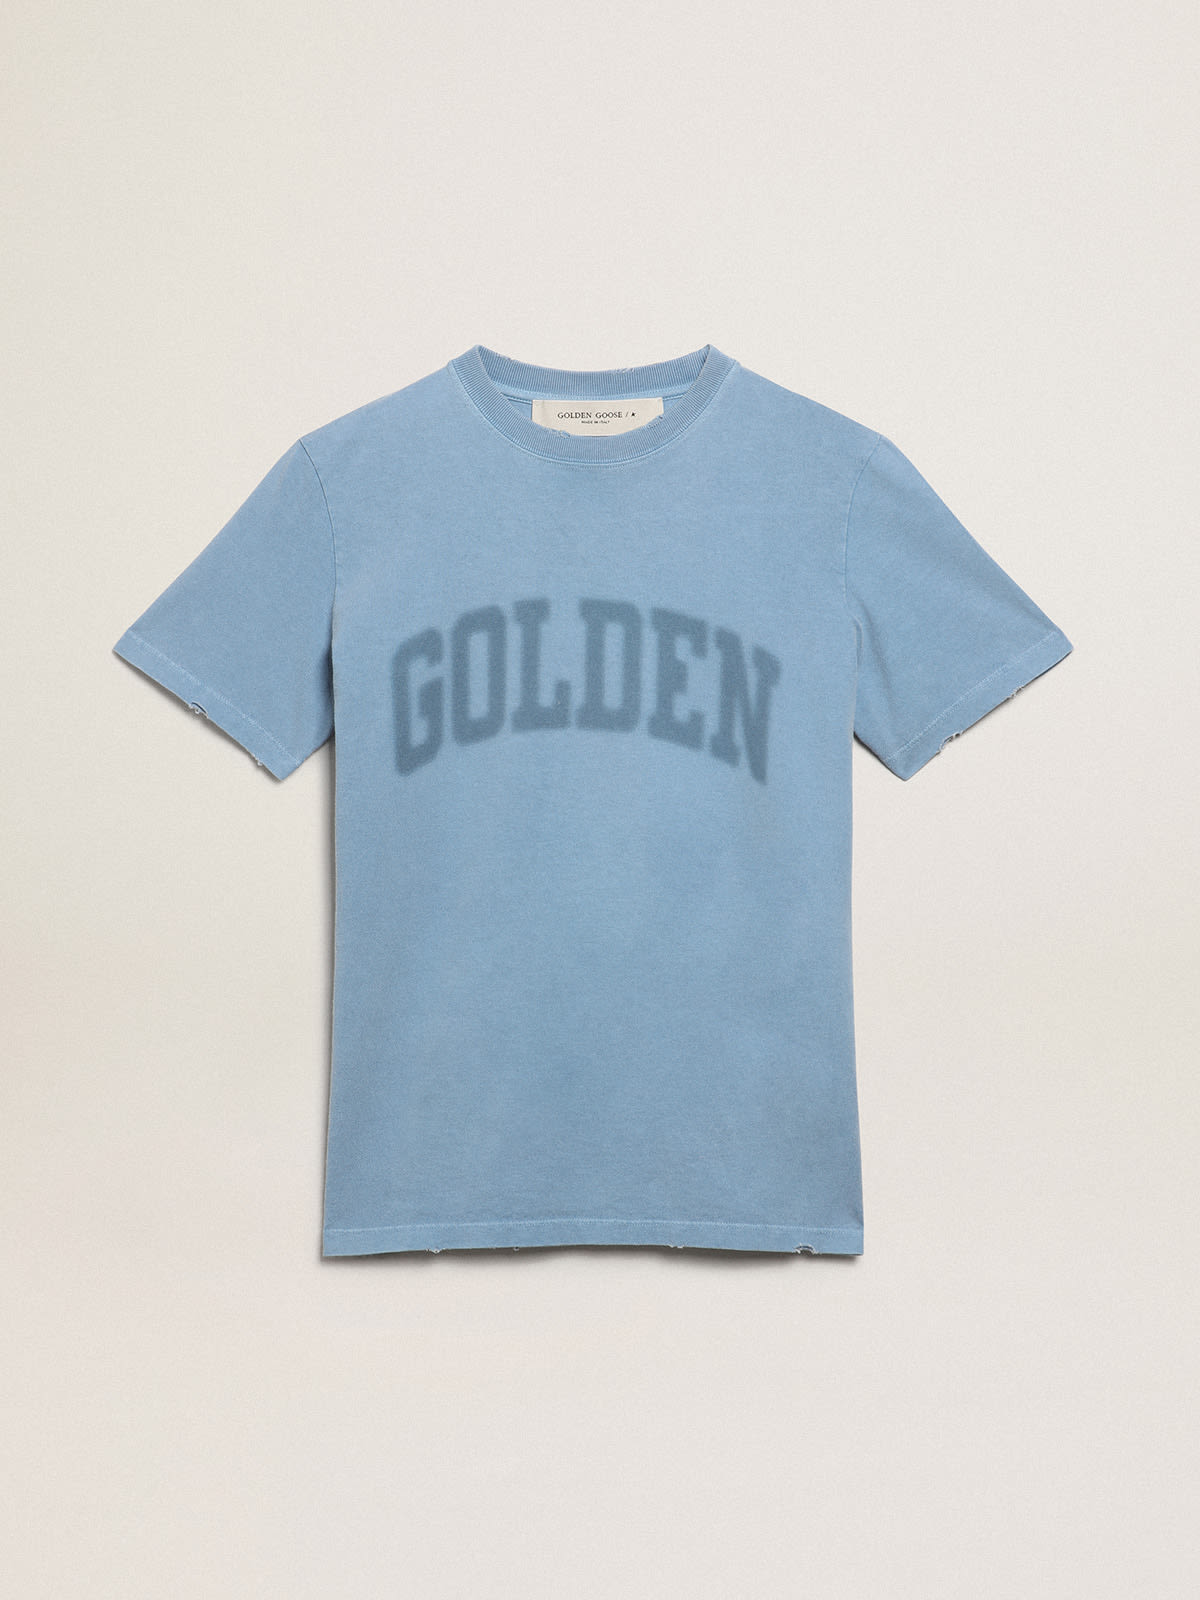 Golden Goose - T-shirt femme bleu port avec inscription Golden ton sur ton in 